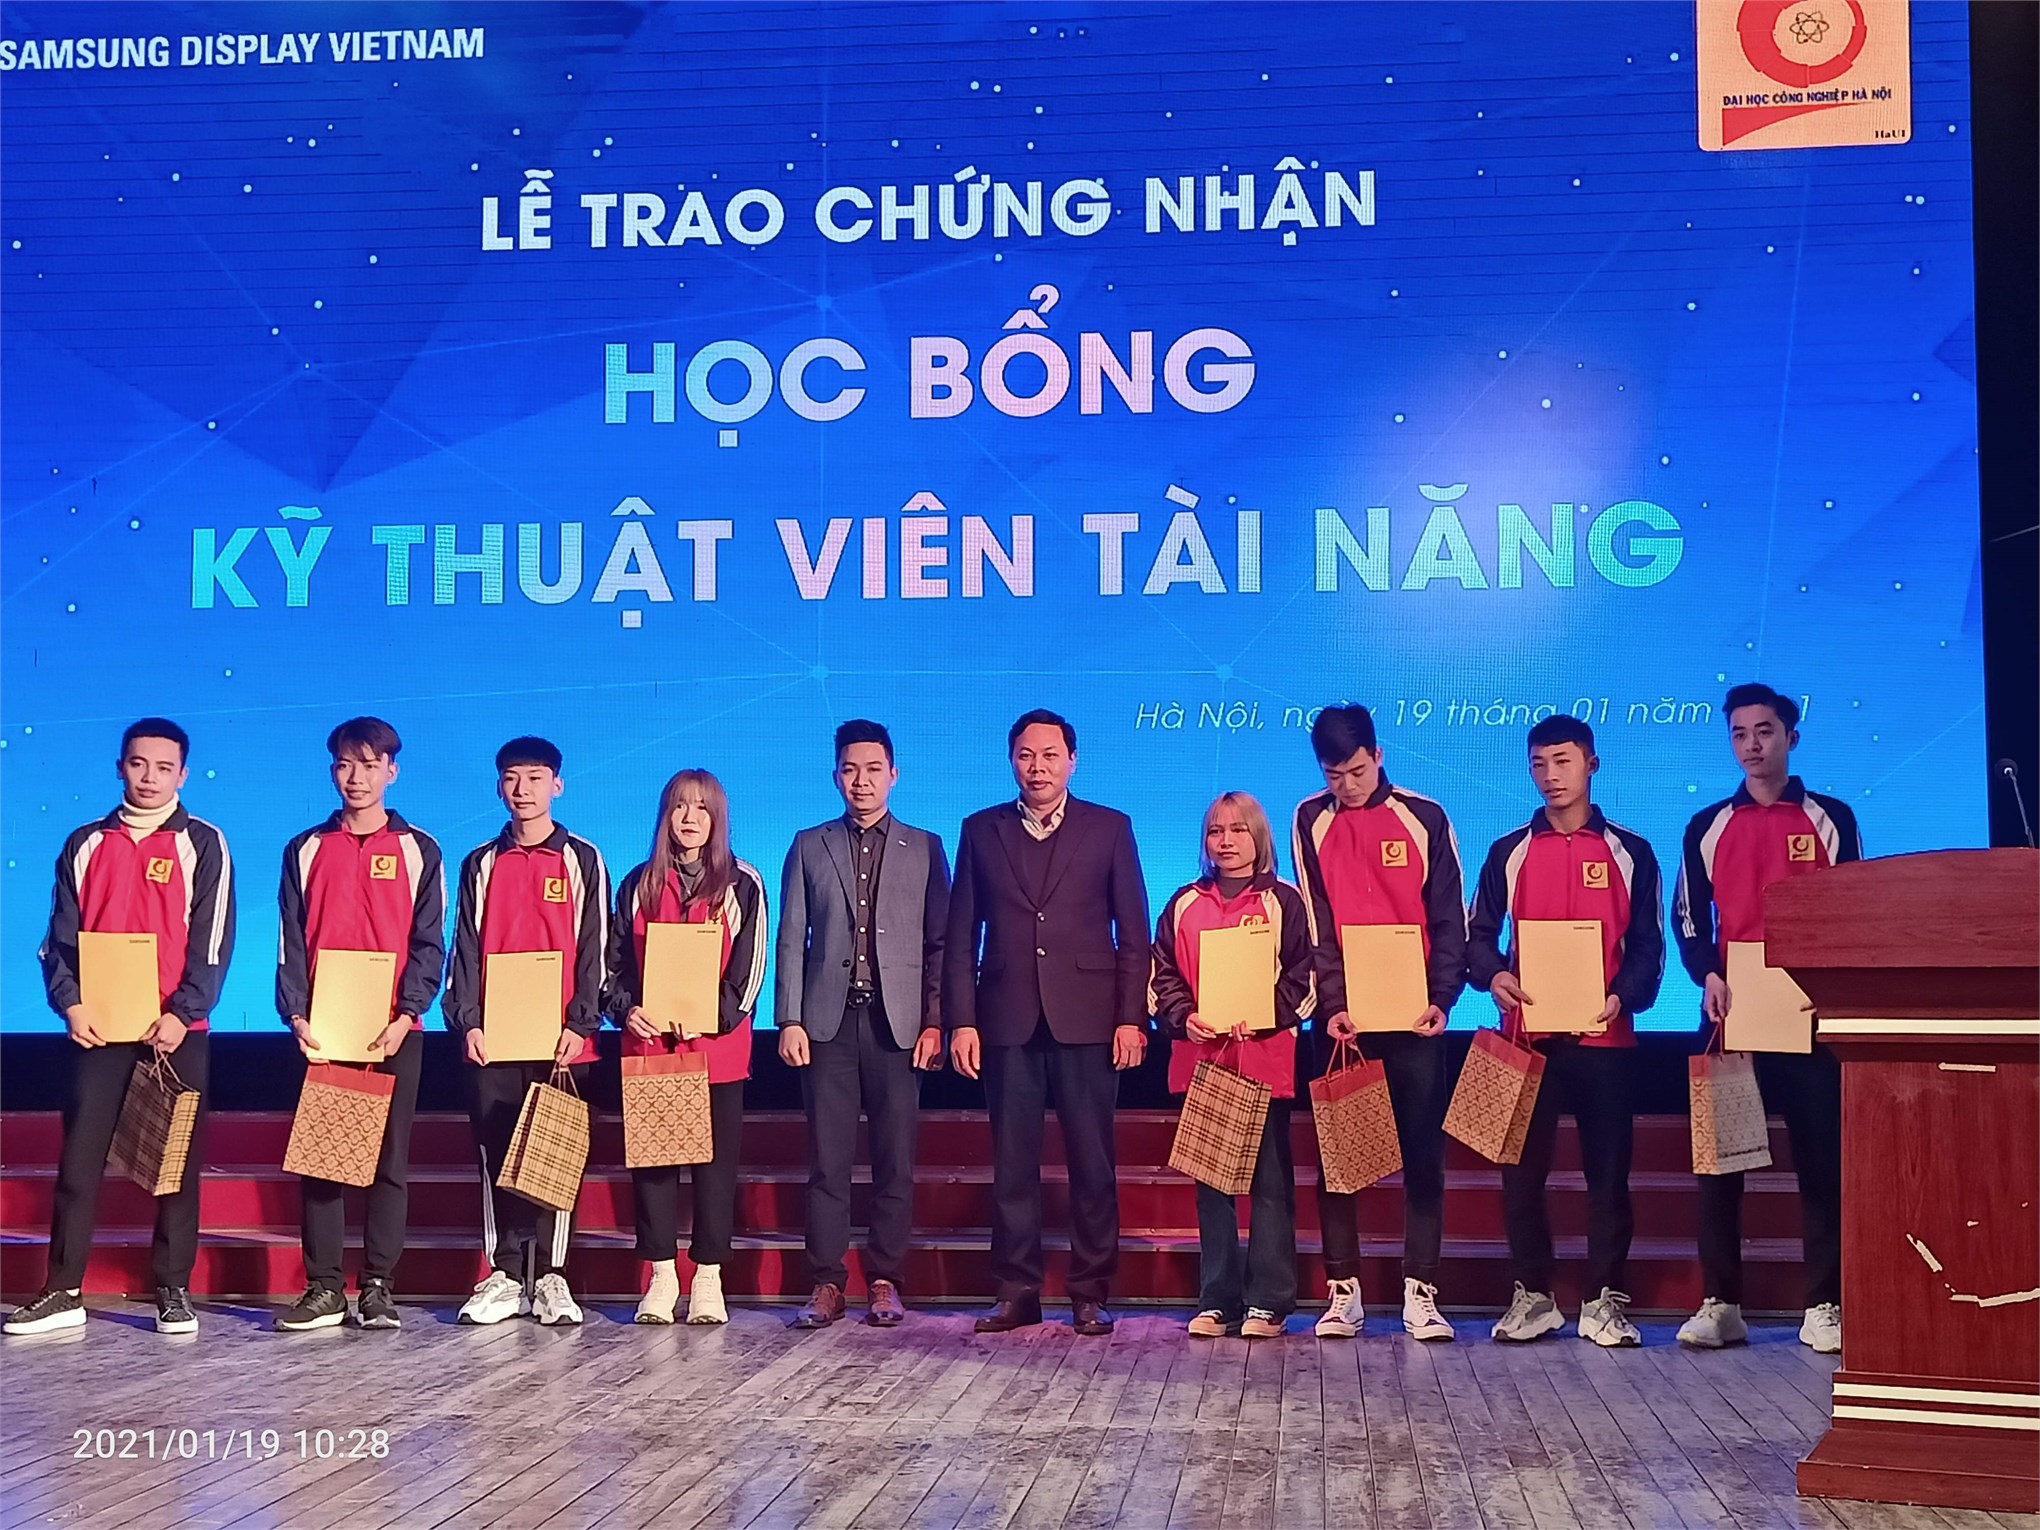 21 sinh viên Trung tâm Việt Nhật được nhận học bổng Kỹ thuật viên tài năng của công ty Samsung Display Việt Nam (SDV)